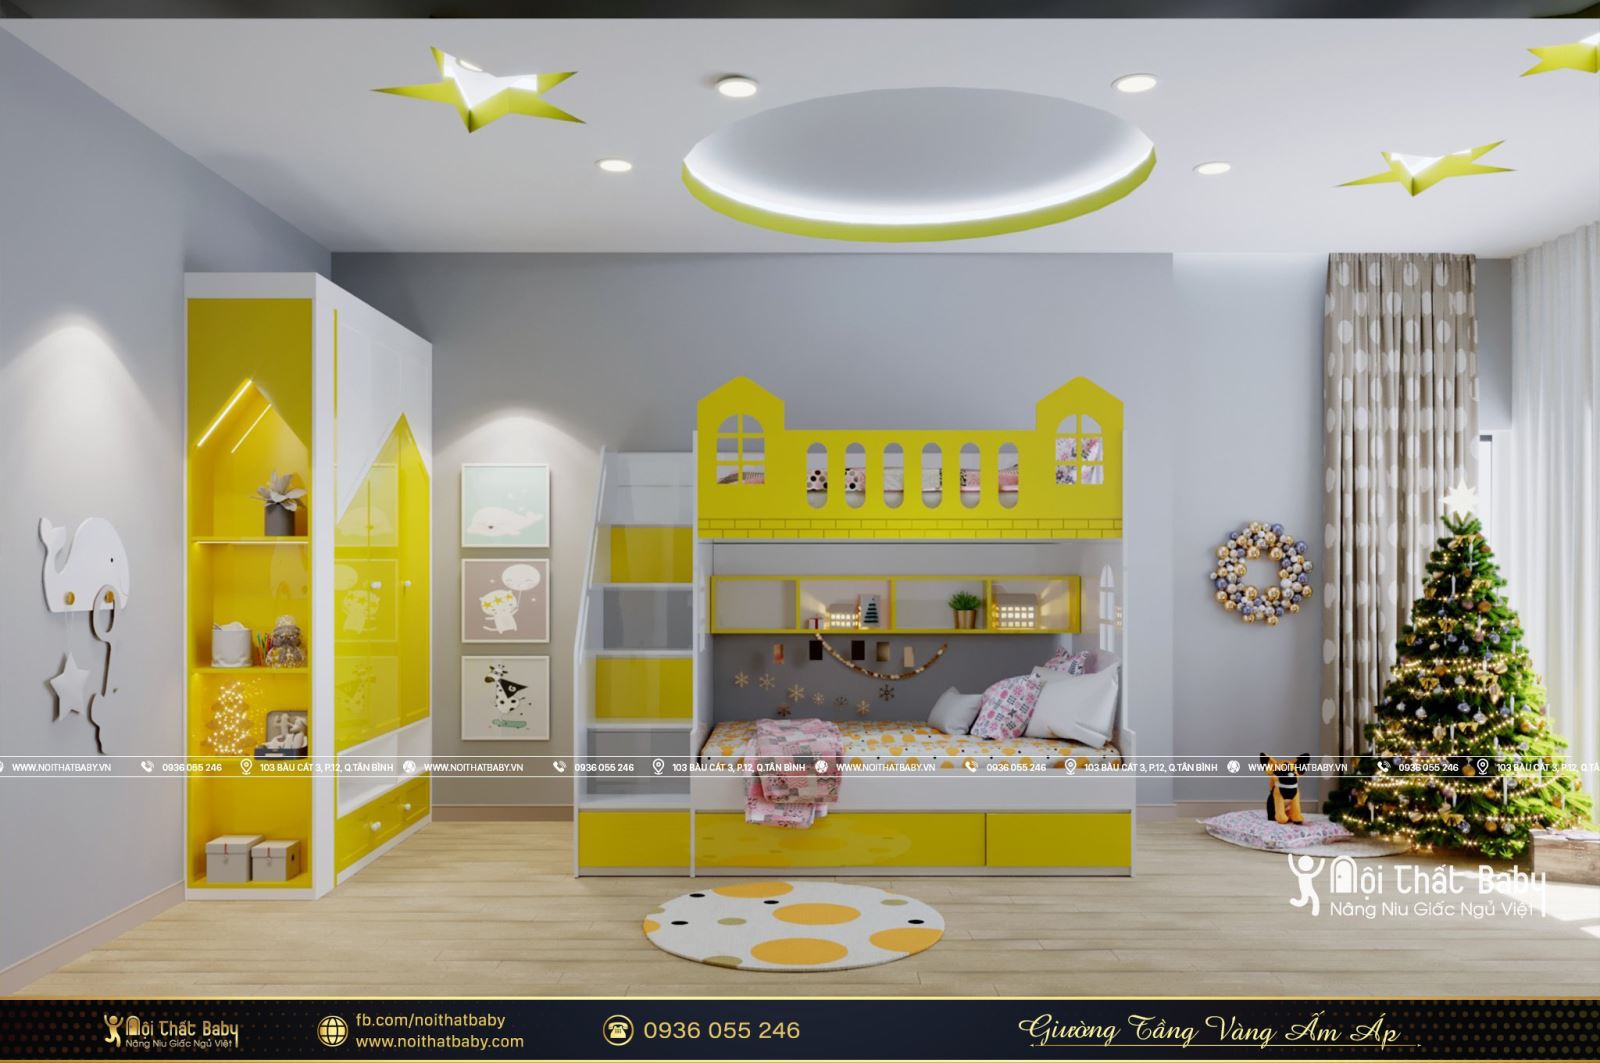 Thiết kế giường tầng màu vàng ấm áp dành cho bé